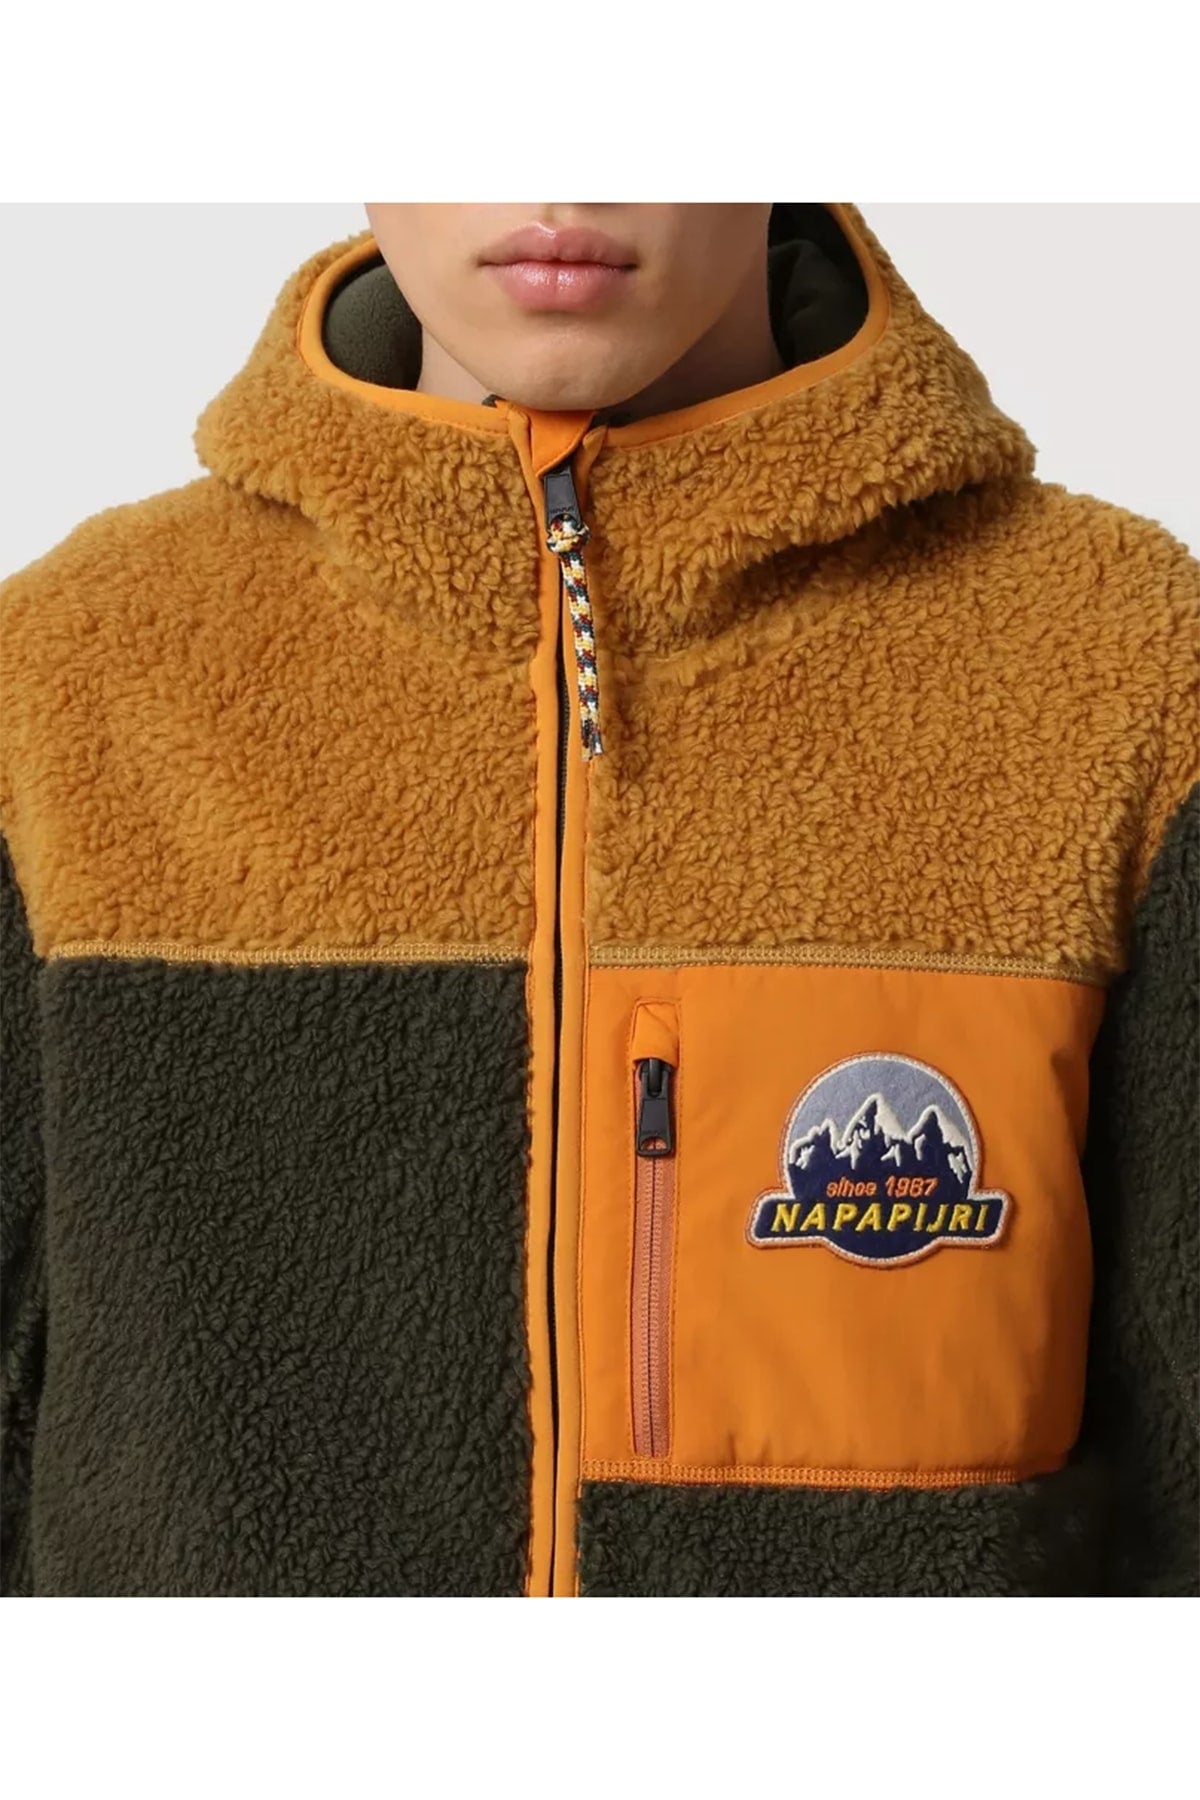 Napapijri Kapüşonlu Peluş Ceket-Libas Trendy Fashion Store